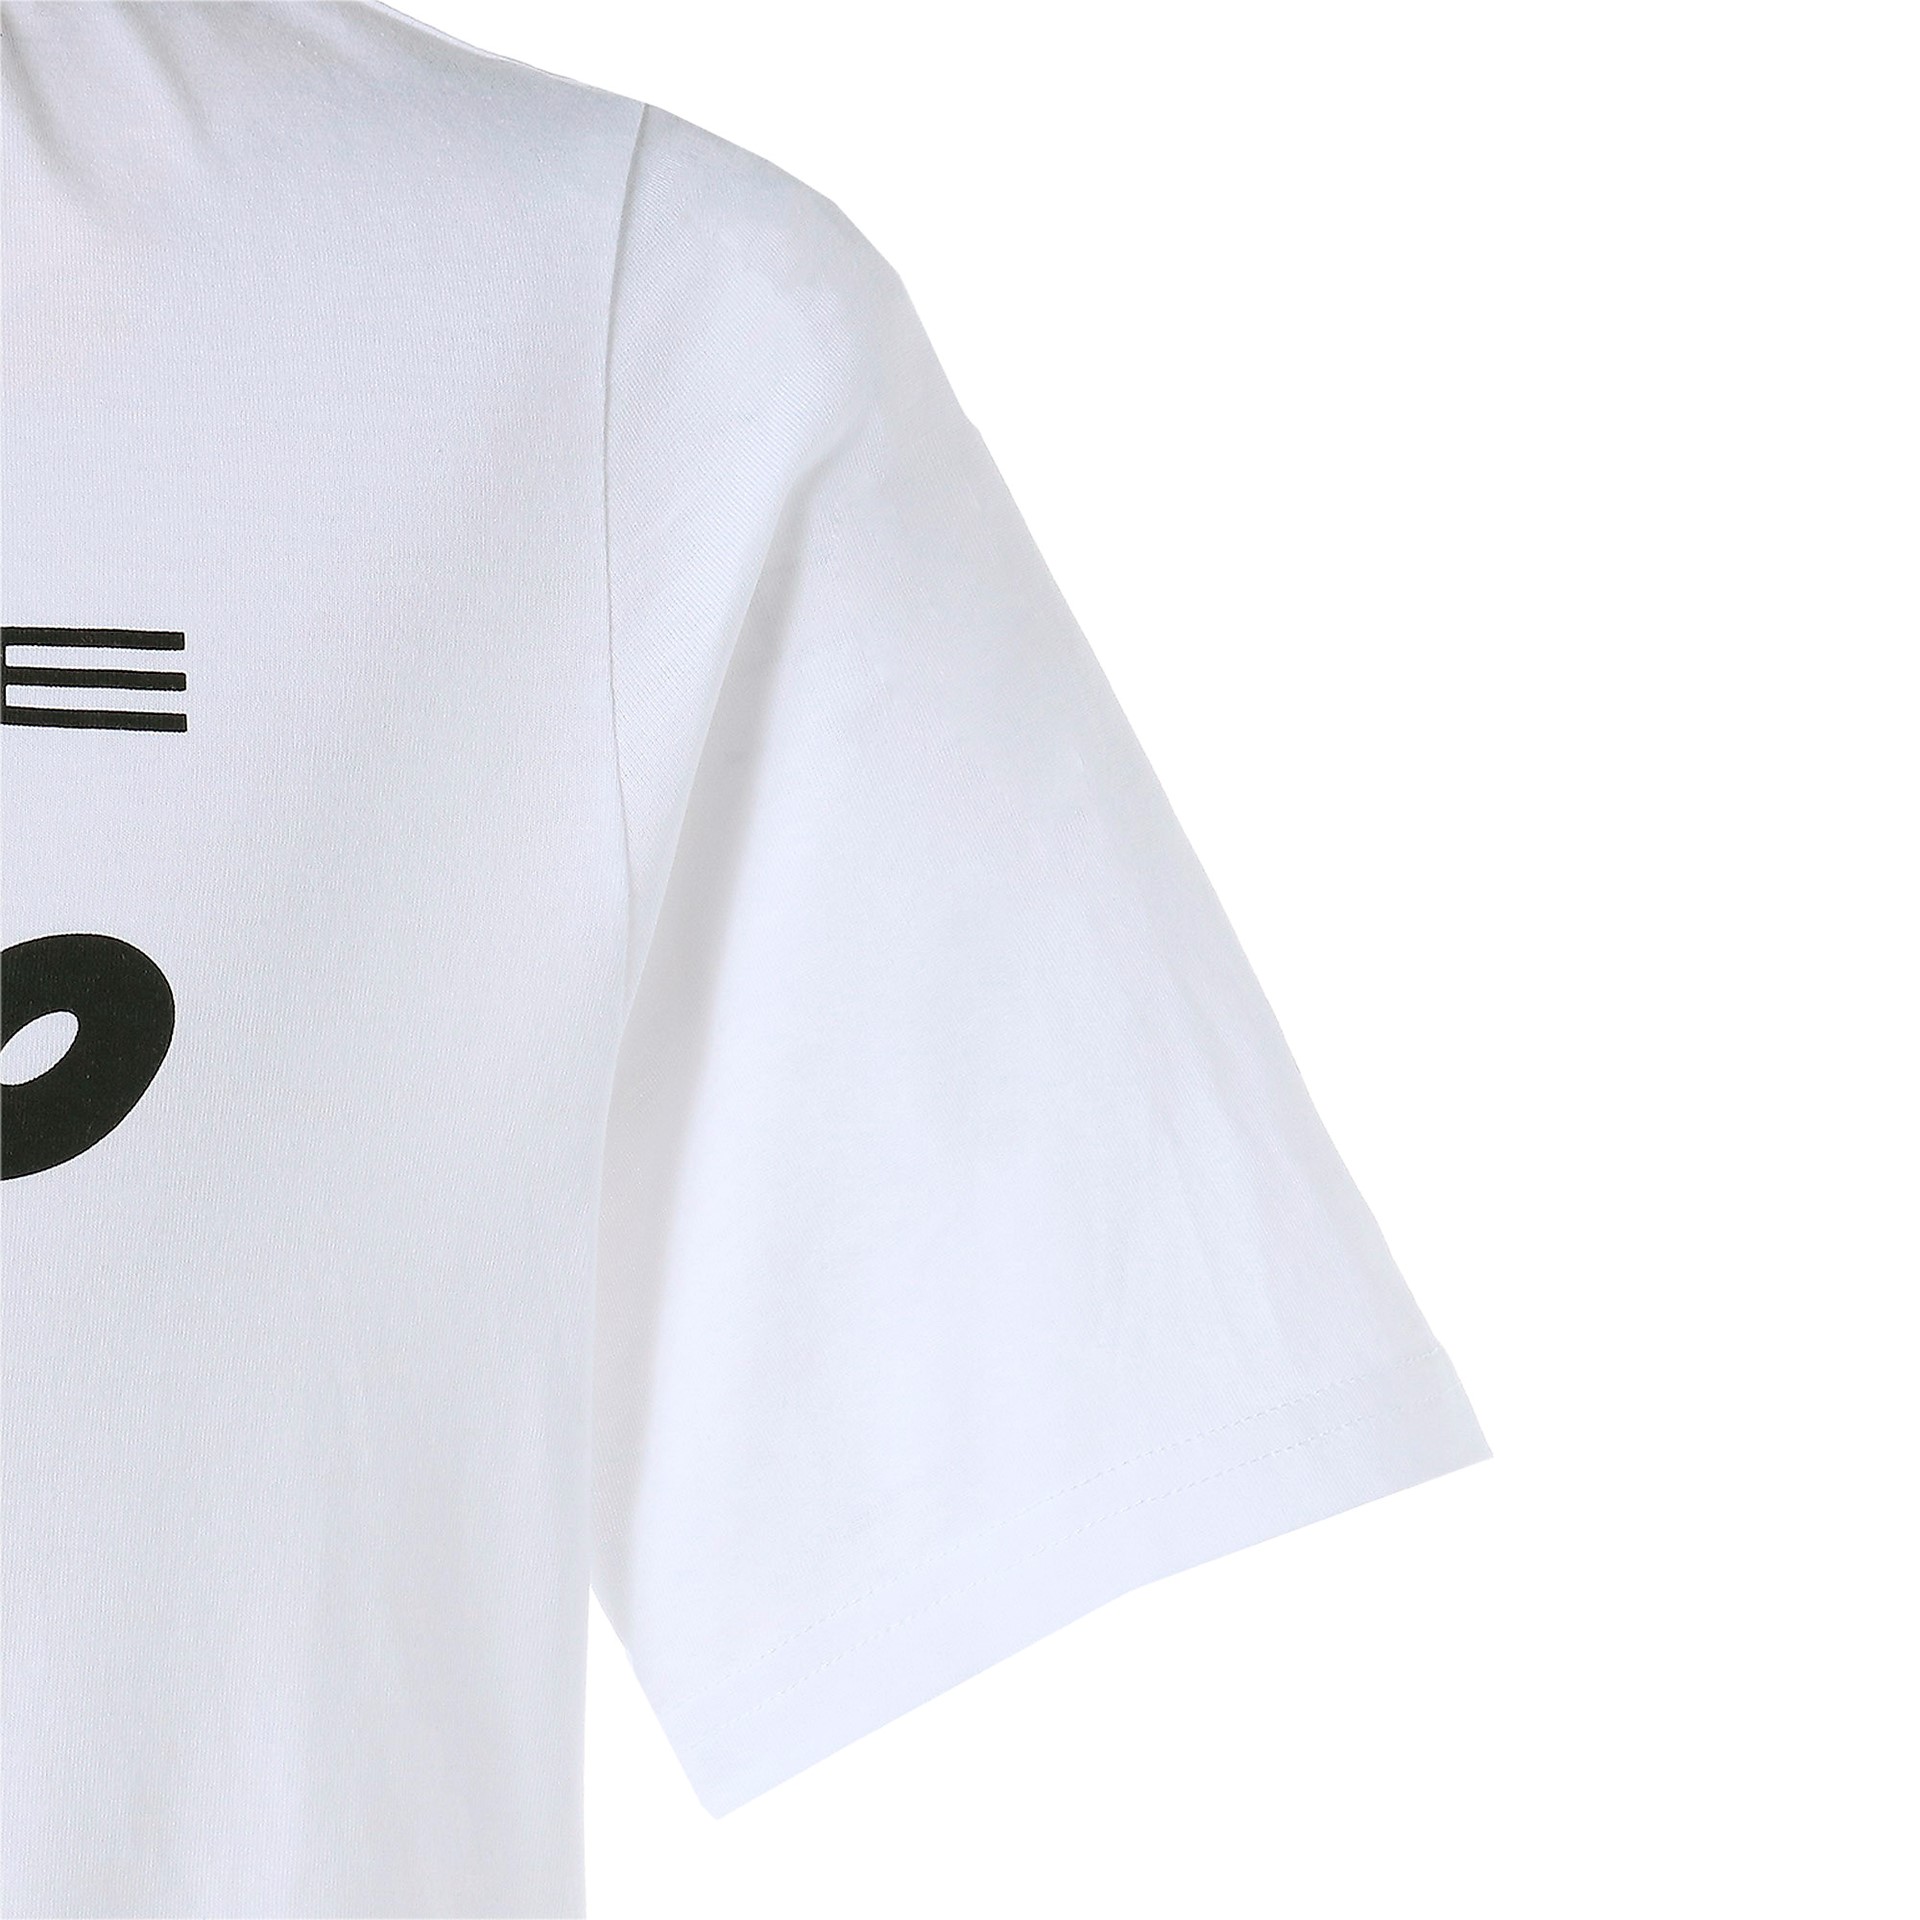 Porsche Legacy Logo T-Shirt für Herren in White 